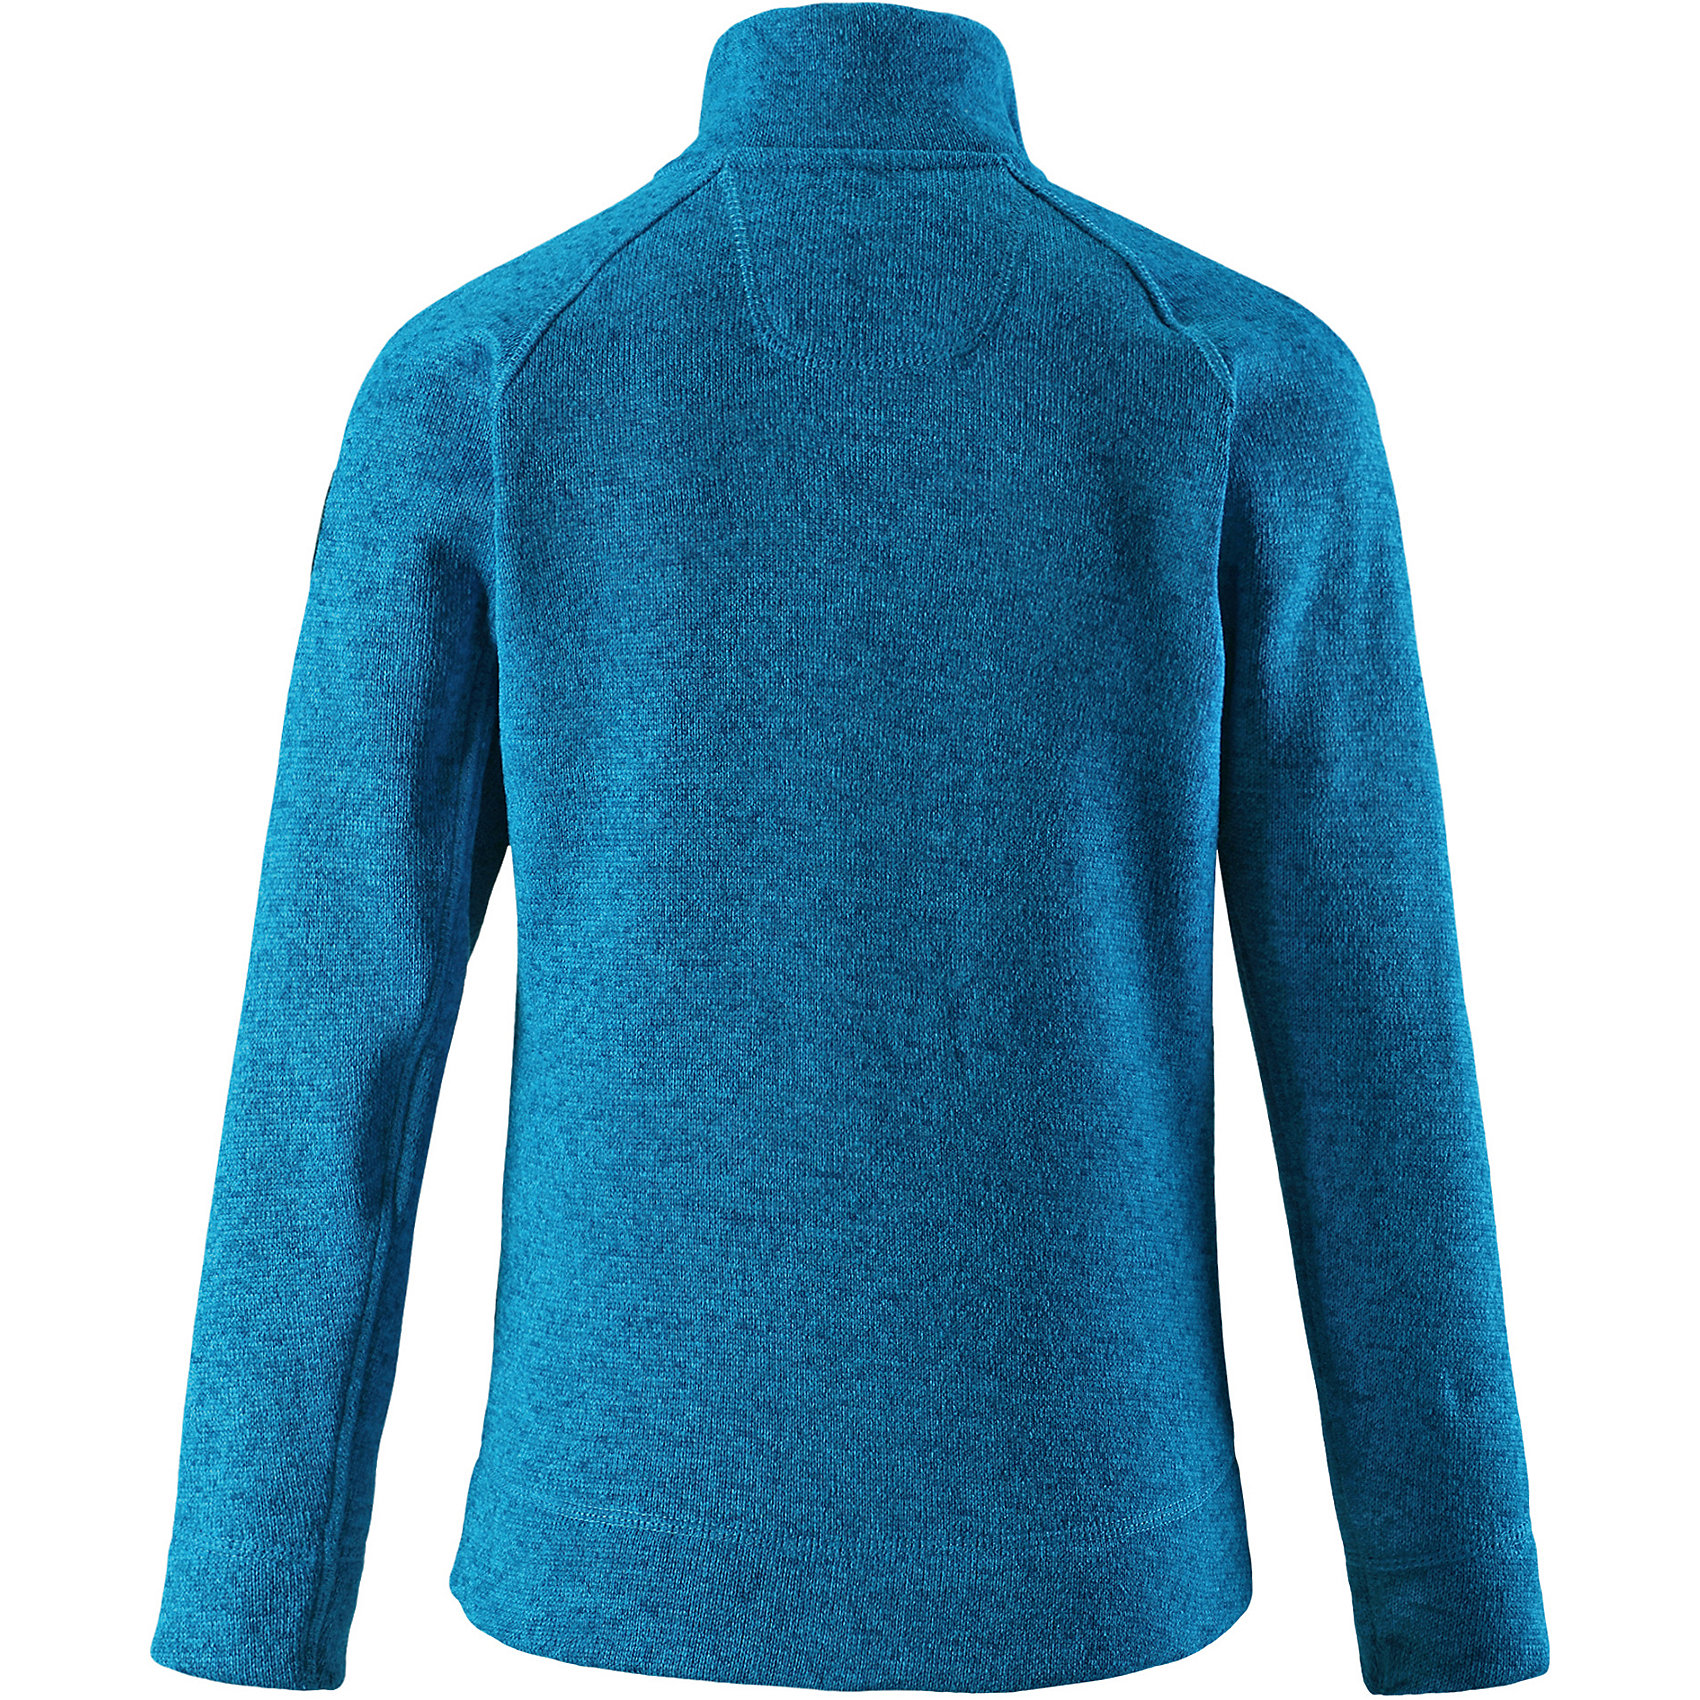 Флисовый джемпер. Reima джемпер для мальчика. Свитер синий размер 140-146. Reima Lovely свитер.